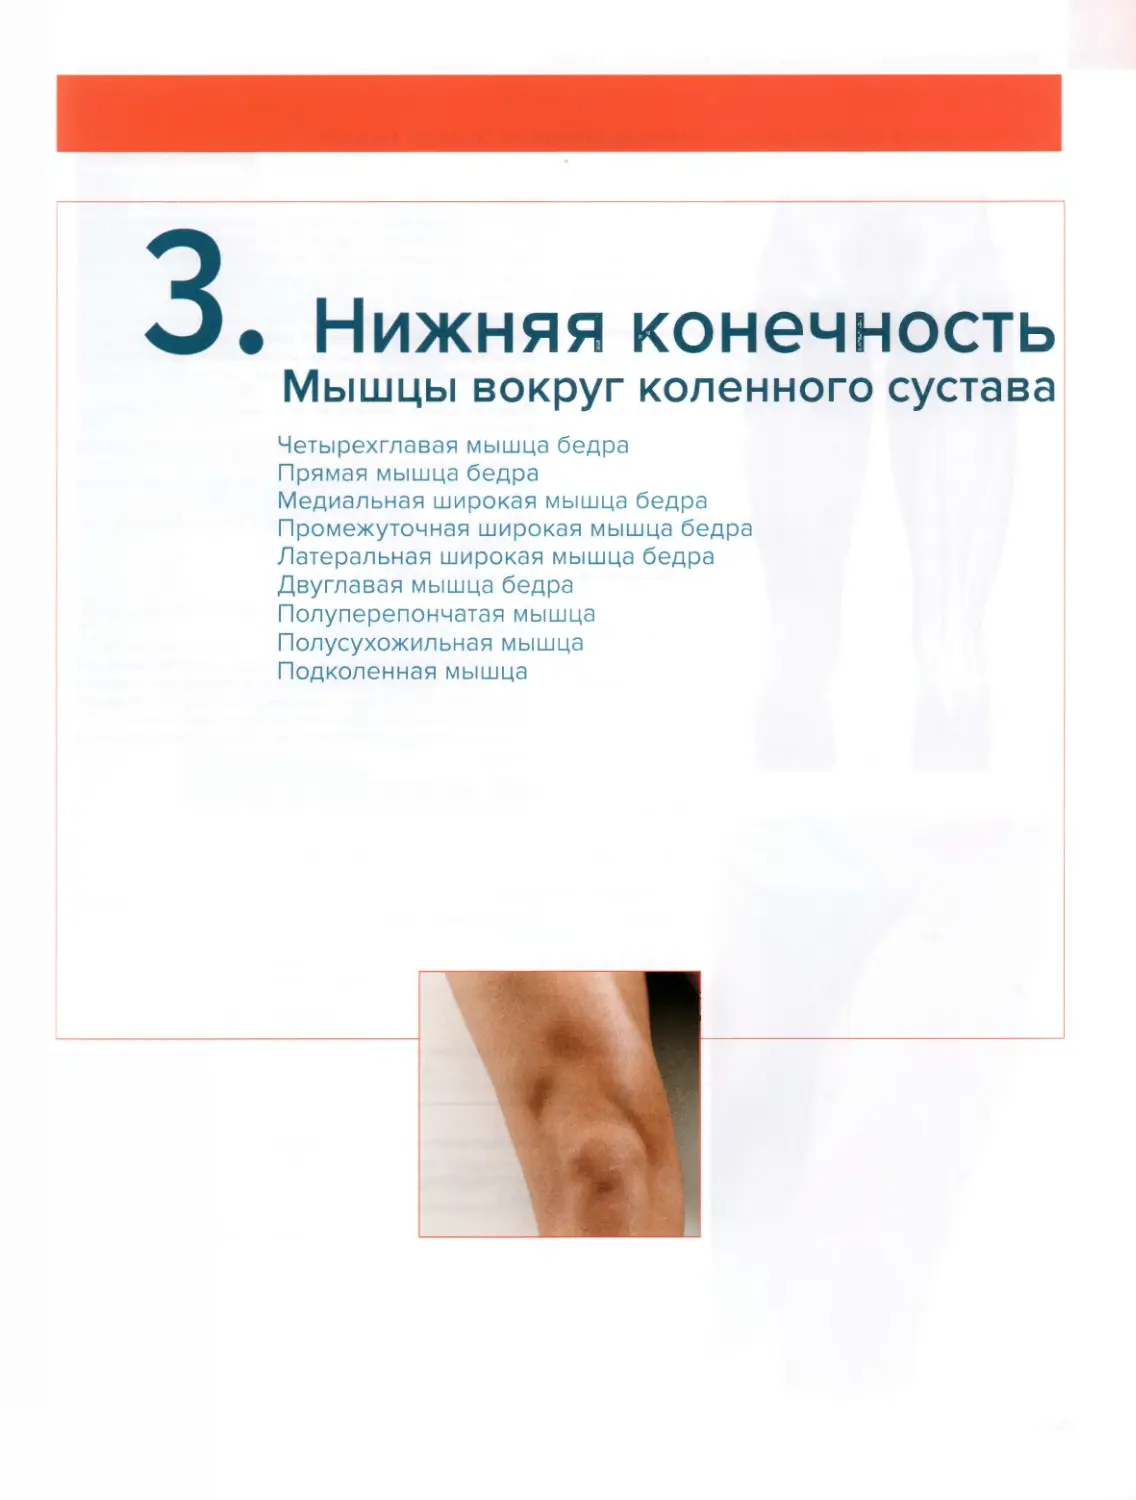 3.2. Мышцы вокруг коленного сустава